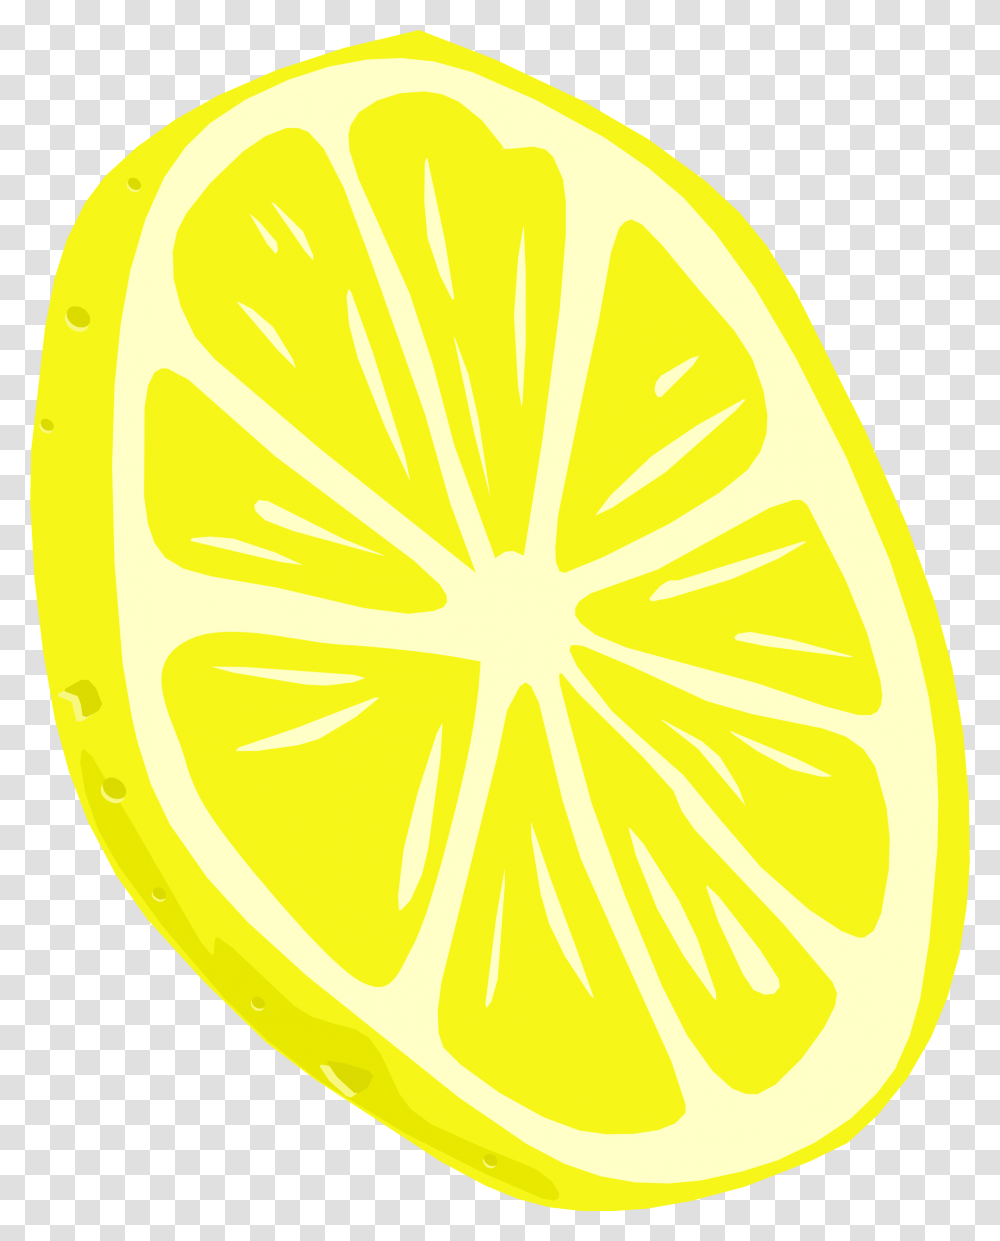 Library Of Apple Orange Lemon Image Freeuse Download Clipart Lemon Slice Background, Citrus Fruit, Plant, Food, Sliced Transparent Png